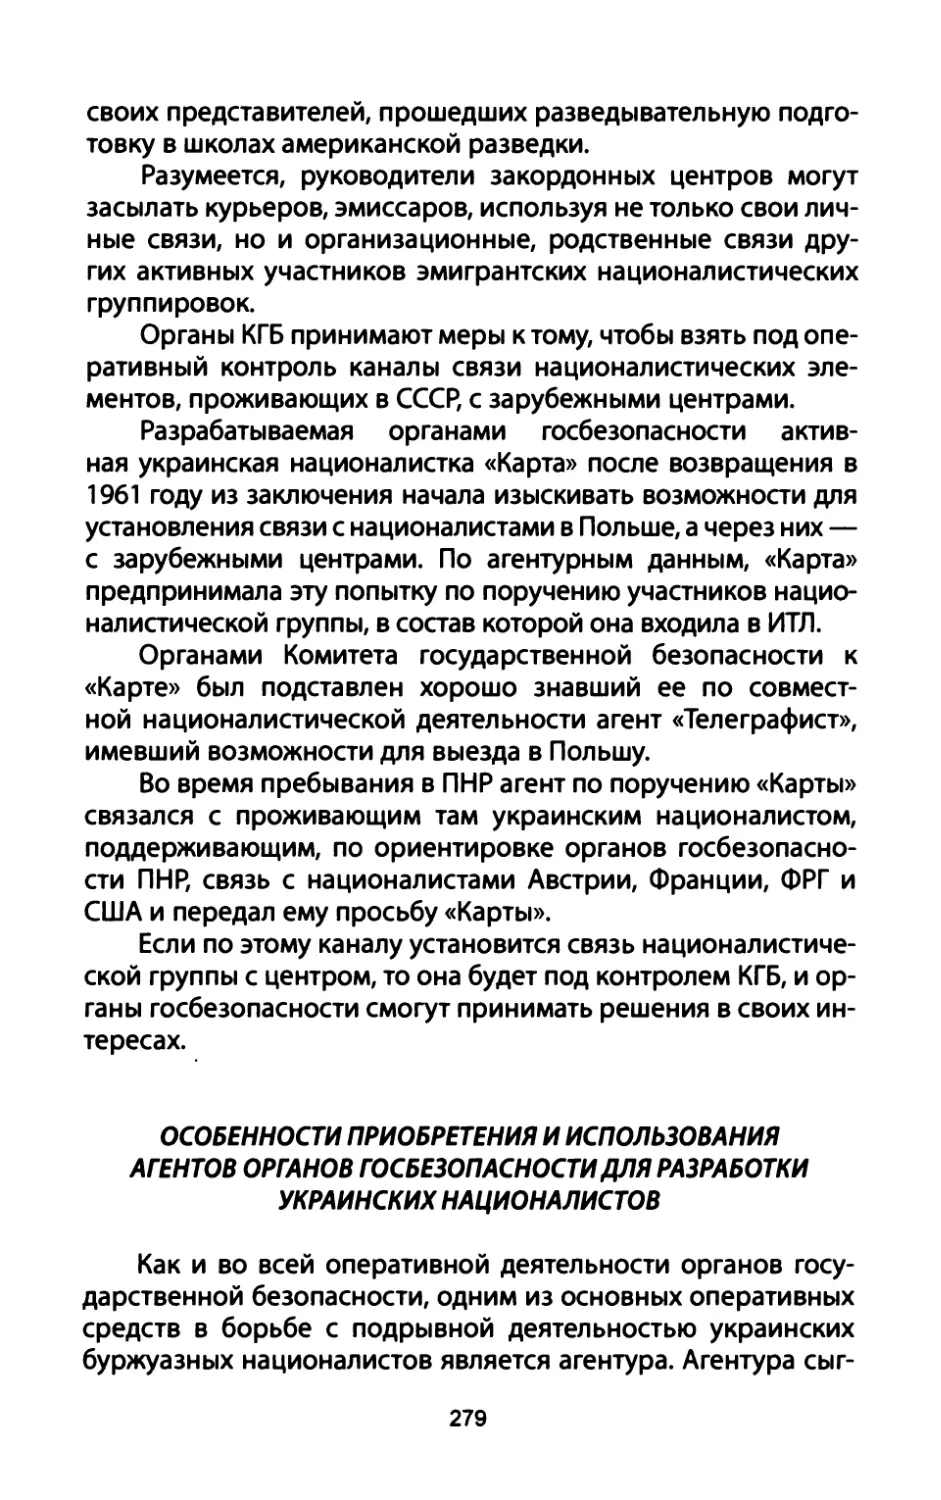 Особенности  приобретения  и  использования агентов  органов  госбезопасности  для  разработки украинских  националистов